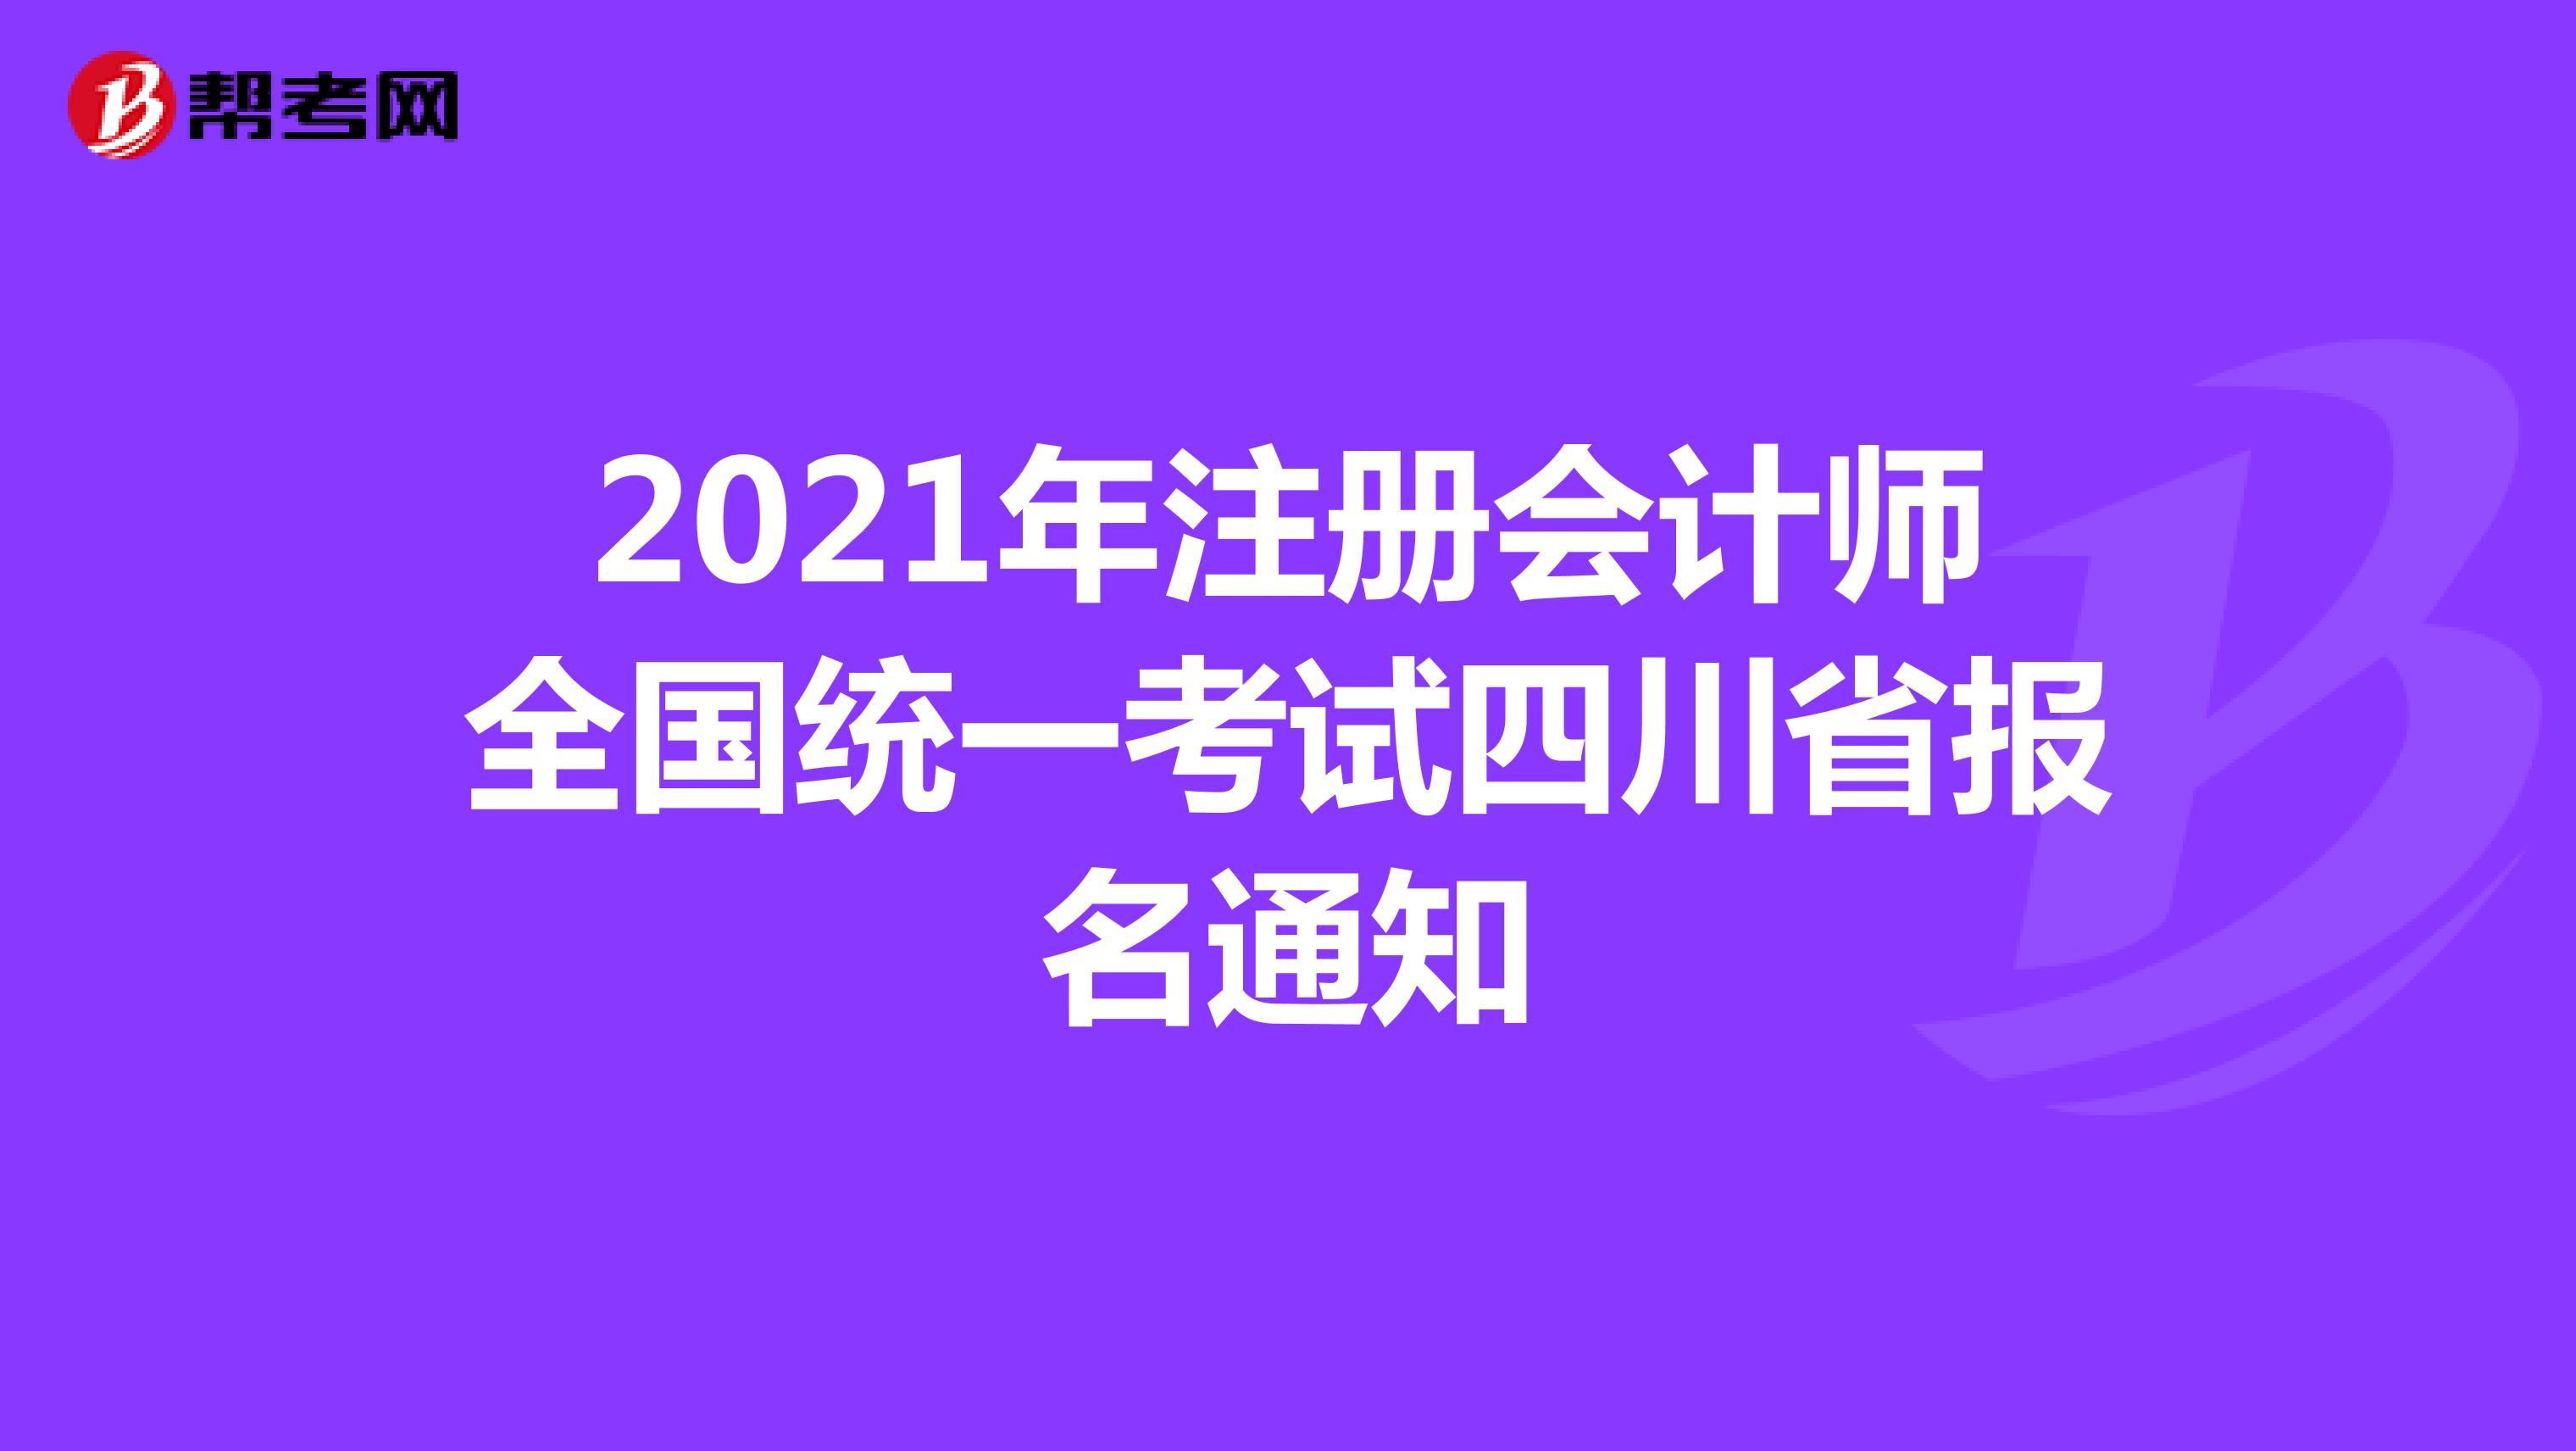 2021年注册会计师全国统一考试四川省报名通知